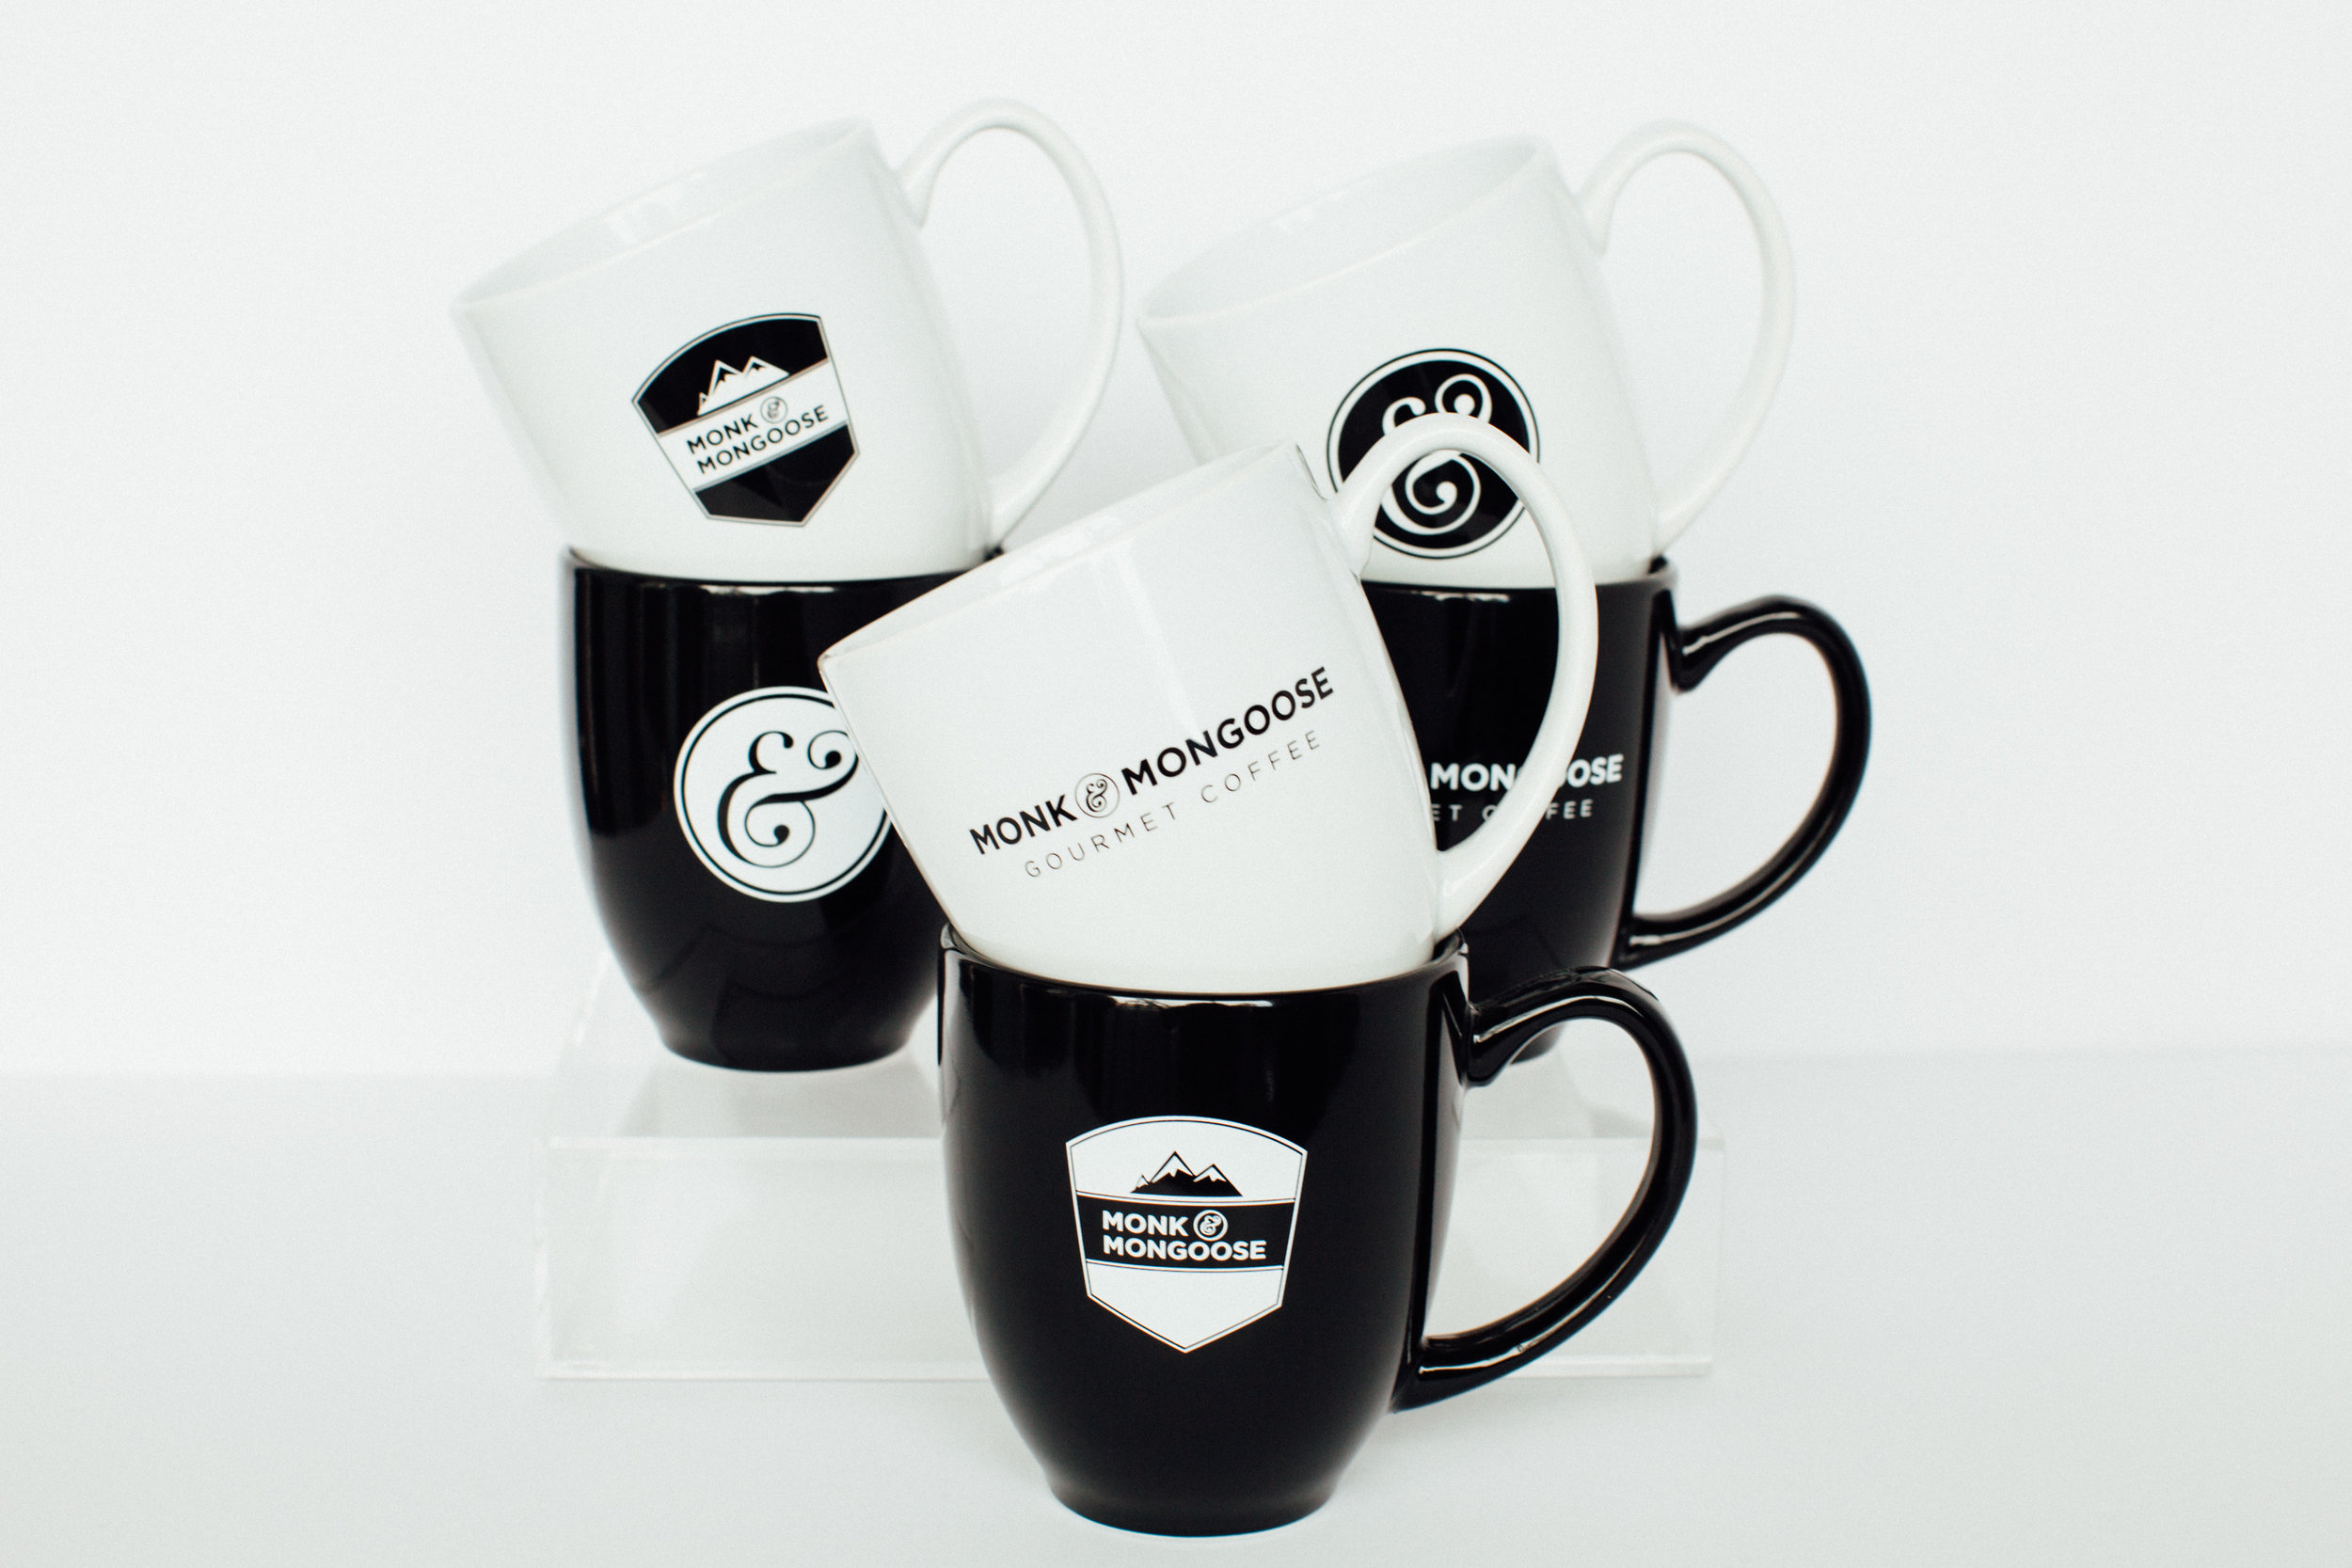 coffee mugs: Choosing a coffee mug - The Economic Times